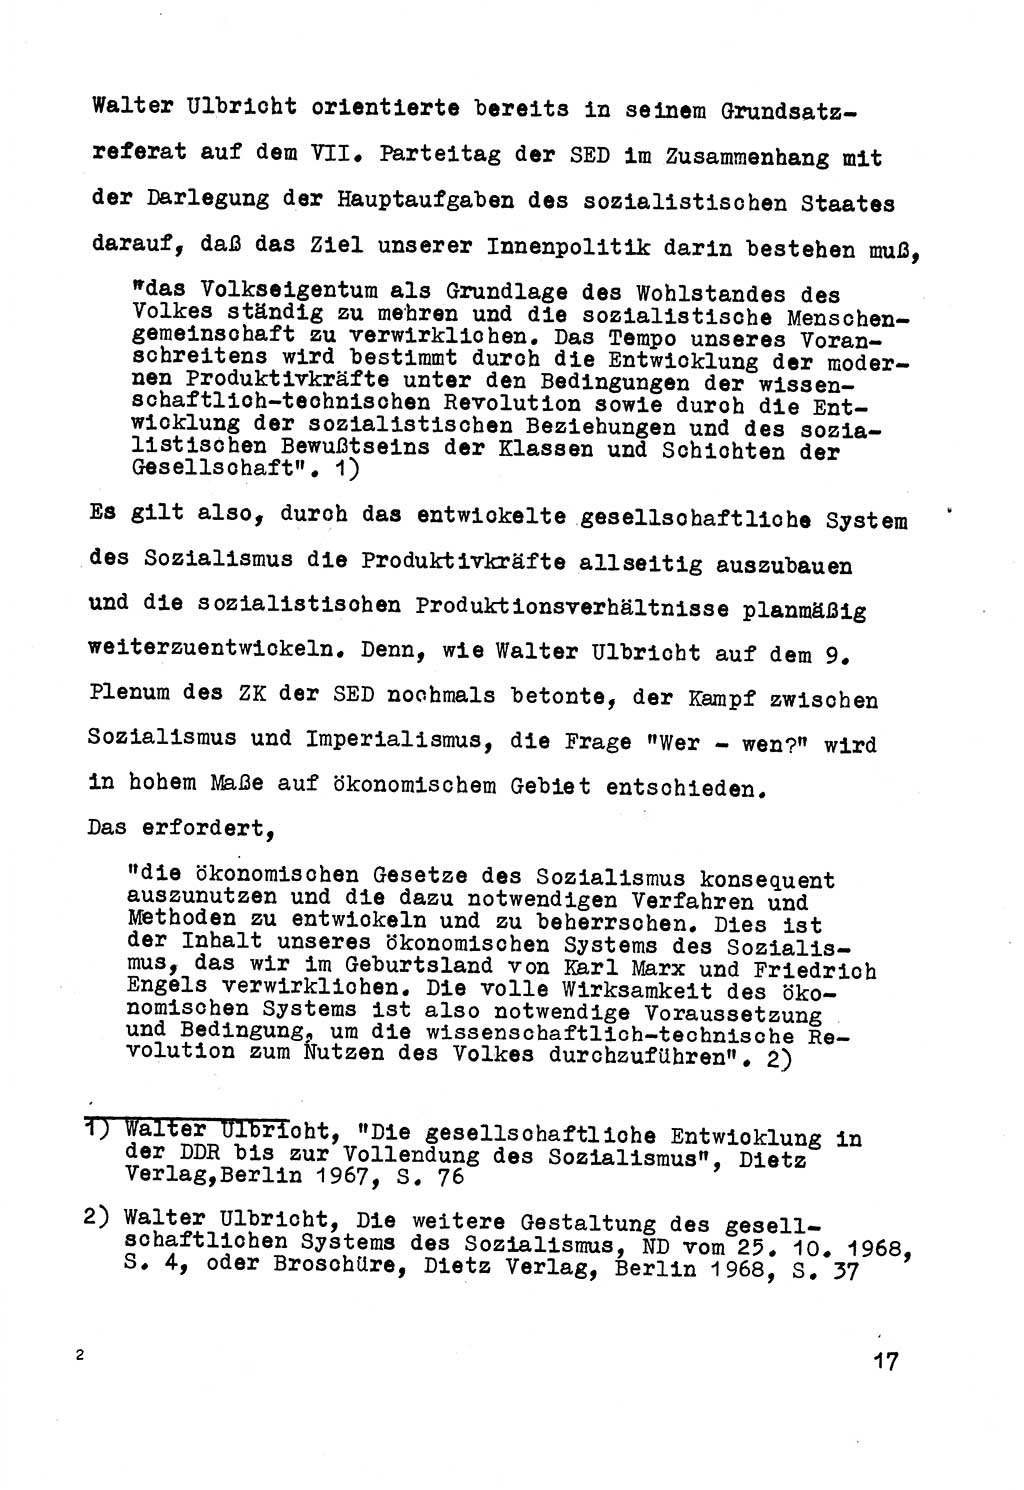 Strafrecht der DDR (Deutsche Demokratische Republik), Besonderer Teil, Lehrmaterial, Heft 5 1970, Seite 17 (Strafr. DDR BT Lehrmat. H. 5 1970, S. 17)